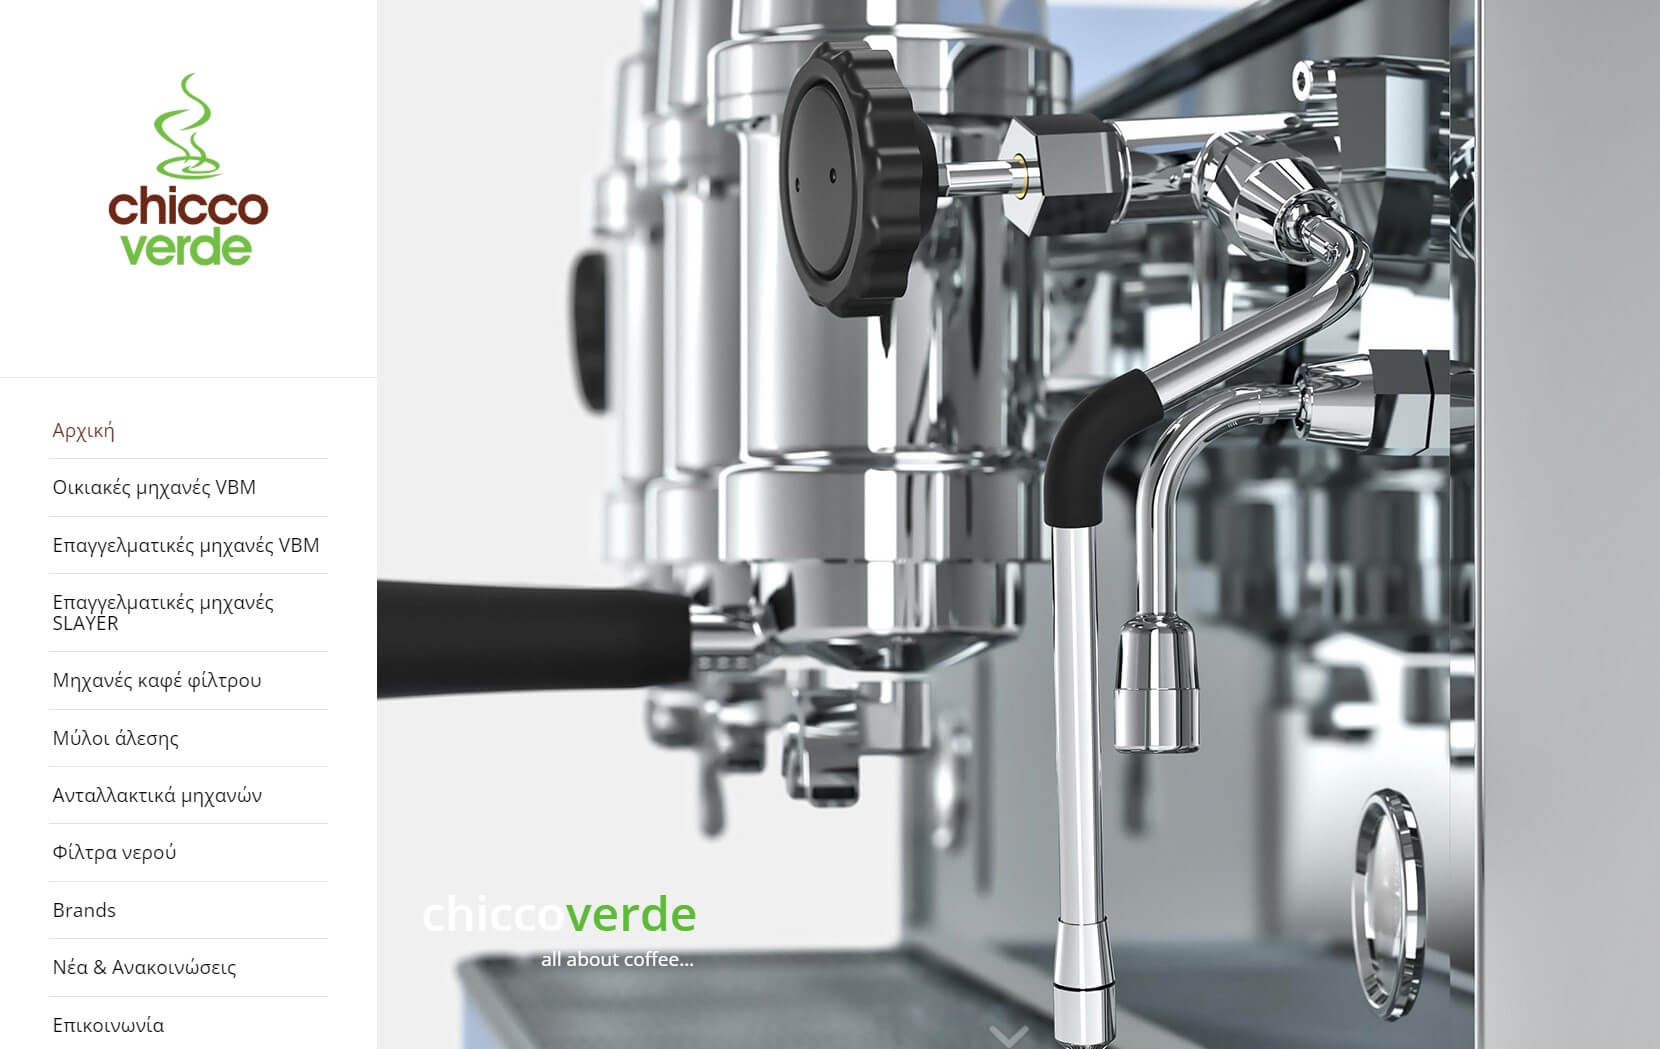 Κατασκευή Ιστοσελίδων Κέρκυρα - Chicco Verde Coffee cover image ιστοσελίδα Κέρκυρα